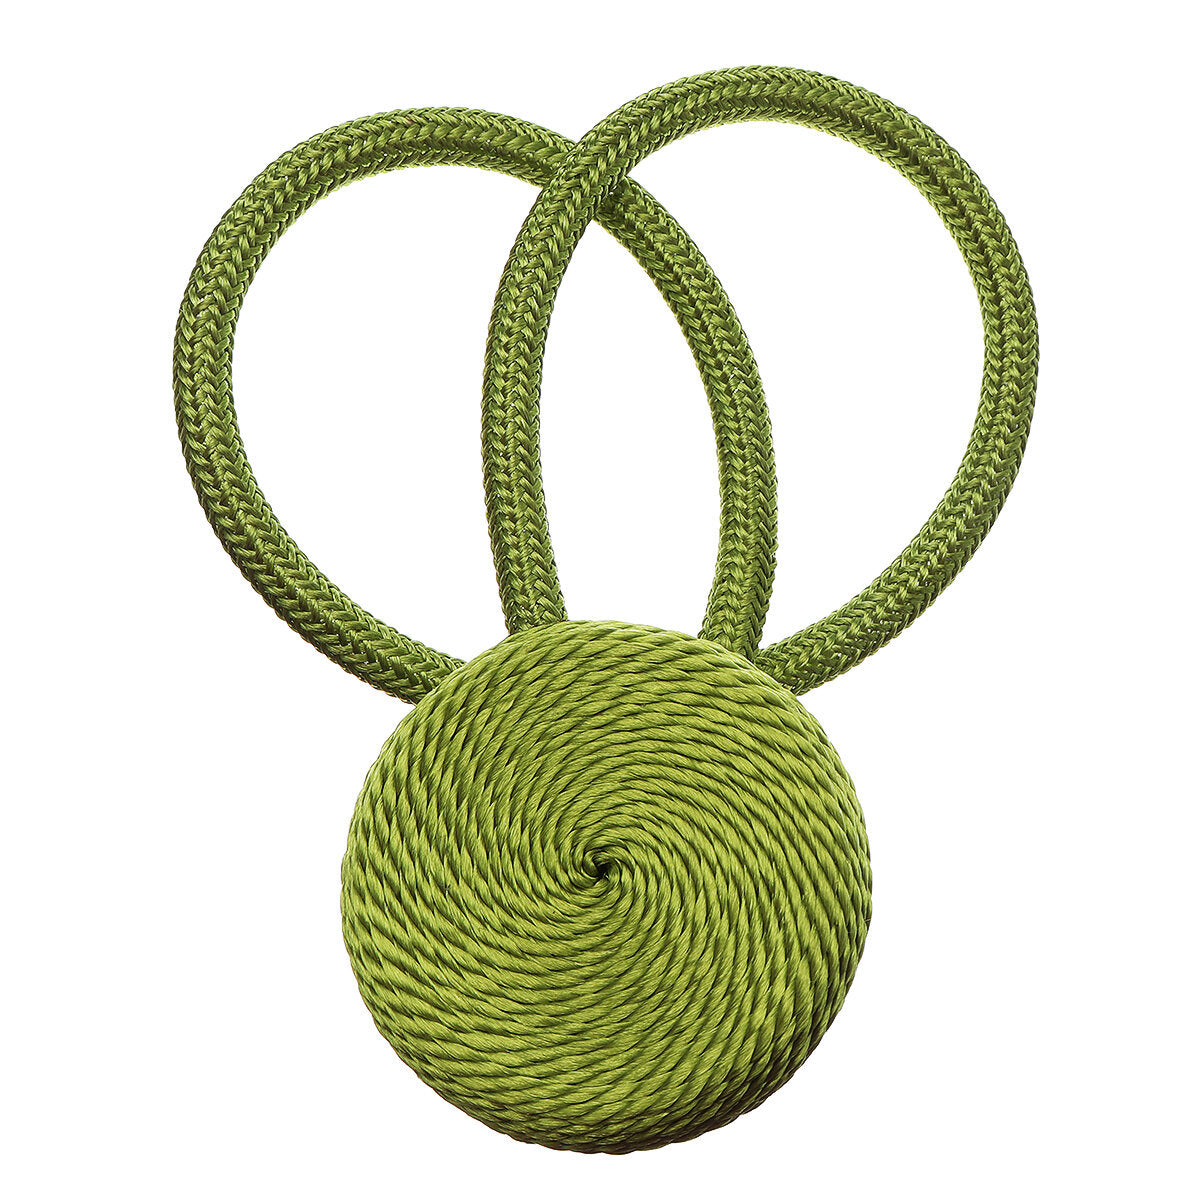 2 stuks magnetische bal gordijn gesp houder tieback tie backs clips: